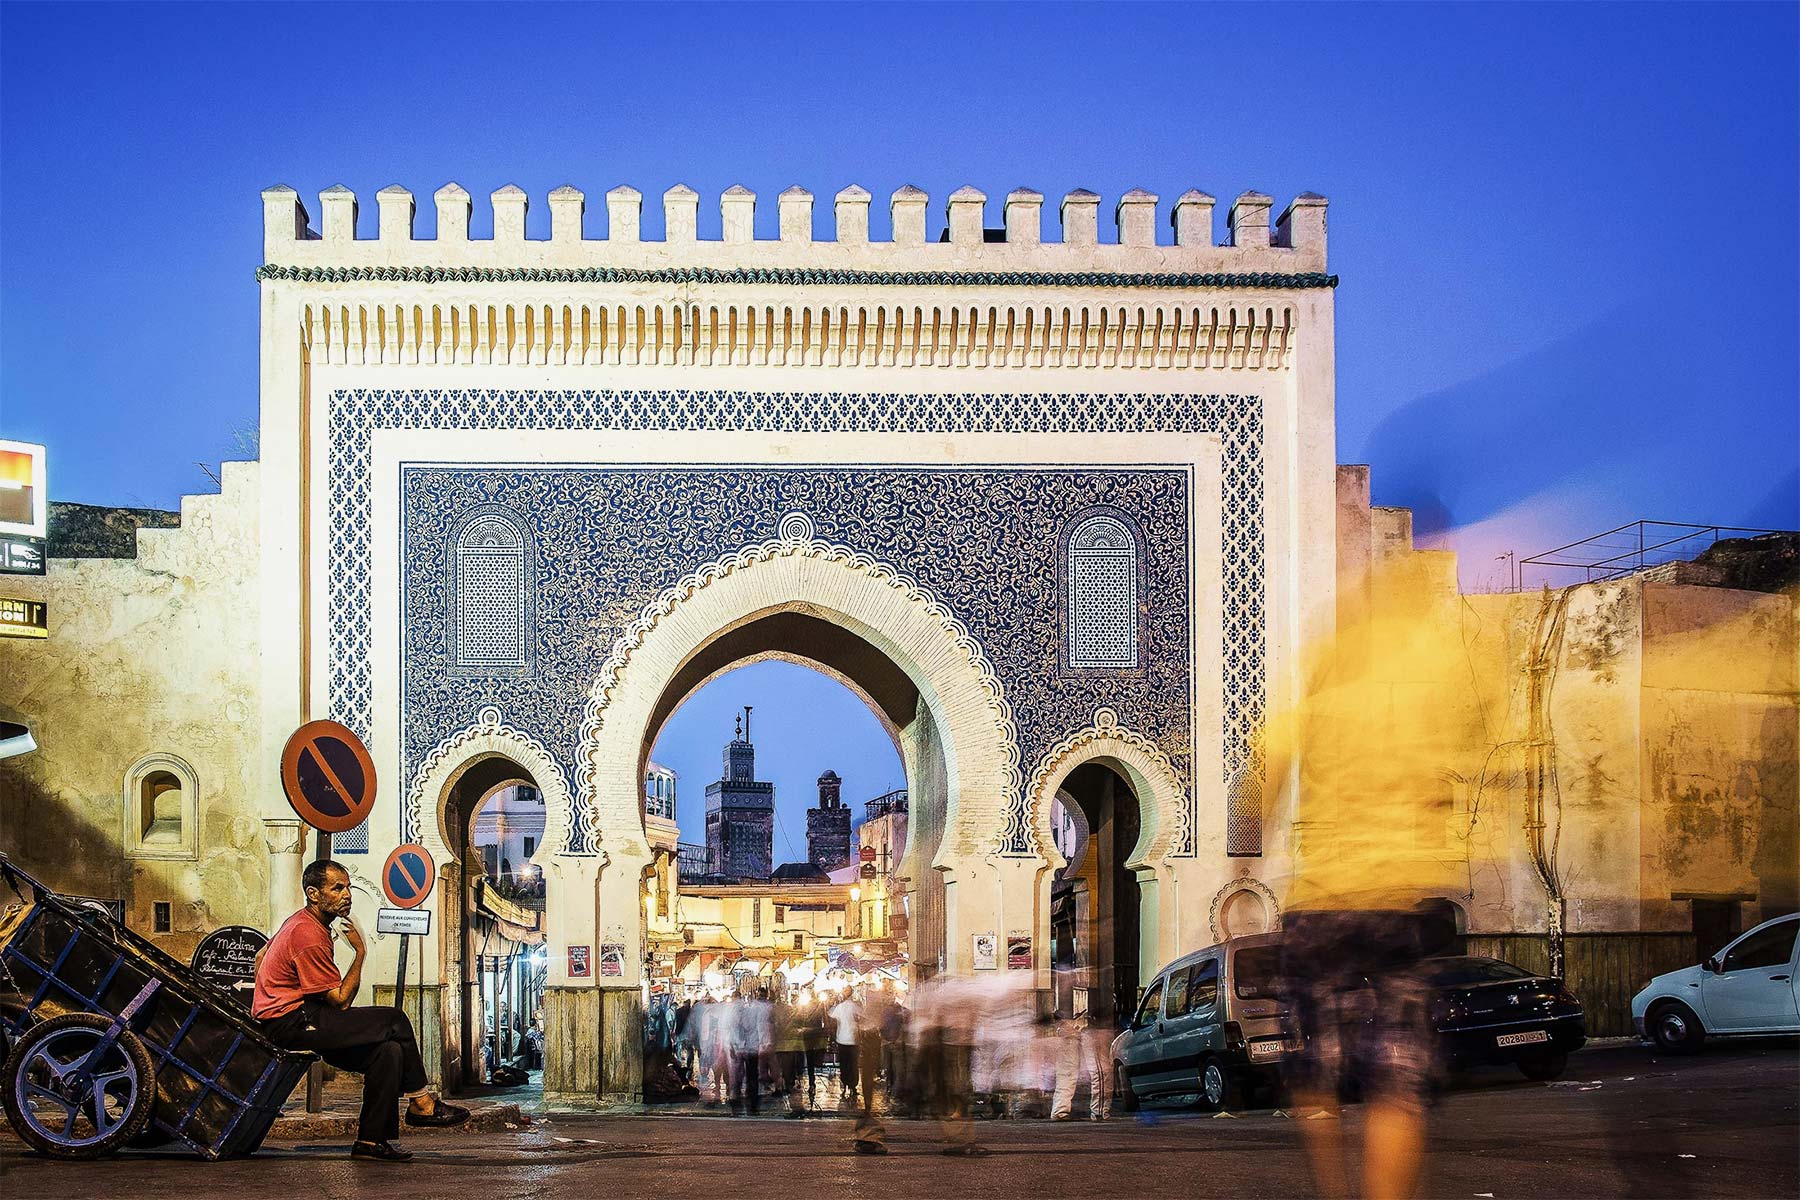 Imperial Cities & Desert 7 Days Marrakech